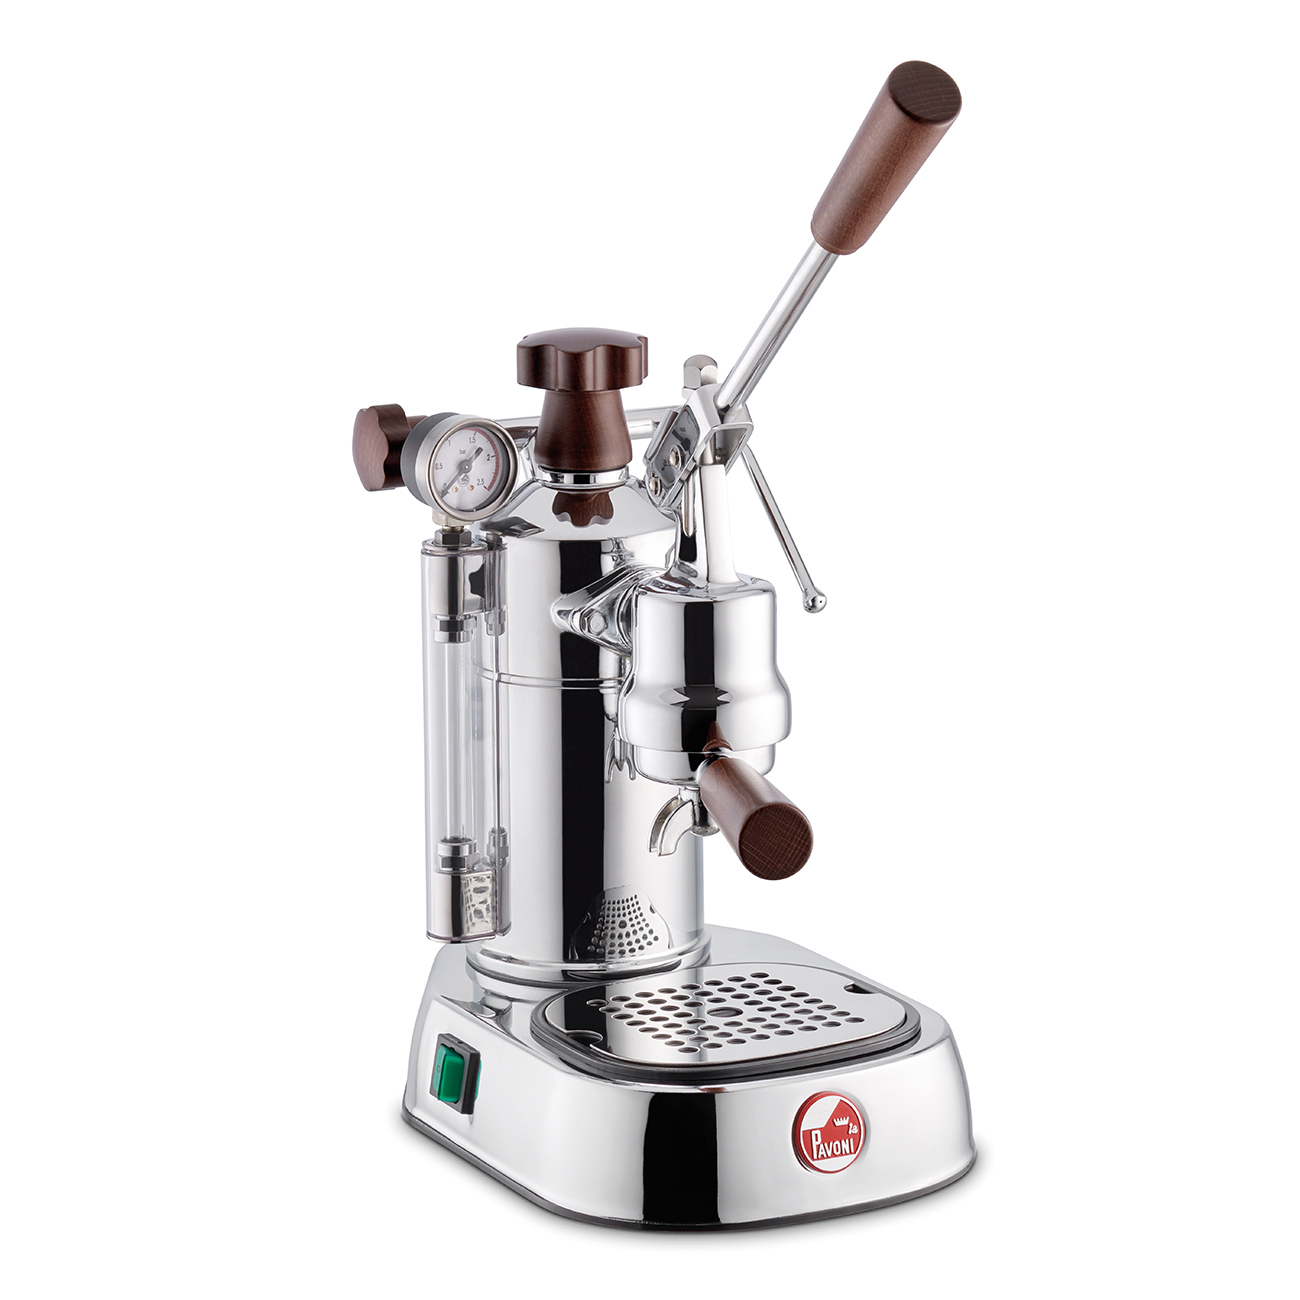 Espresso La Pavoni Professional Lusso s dřevěnými rukojeťmi